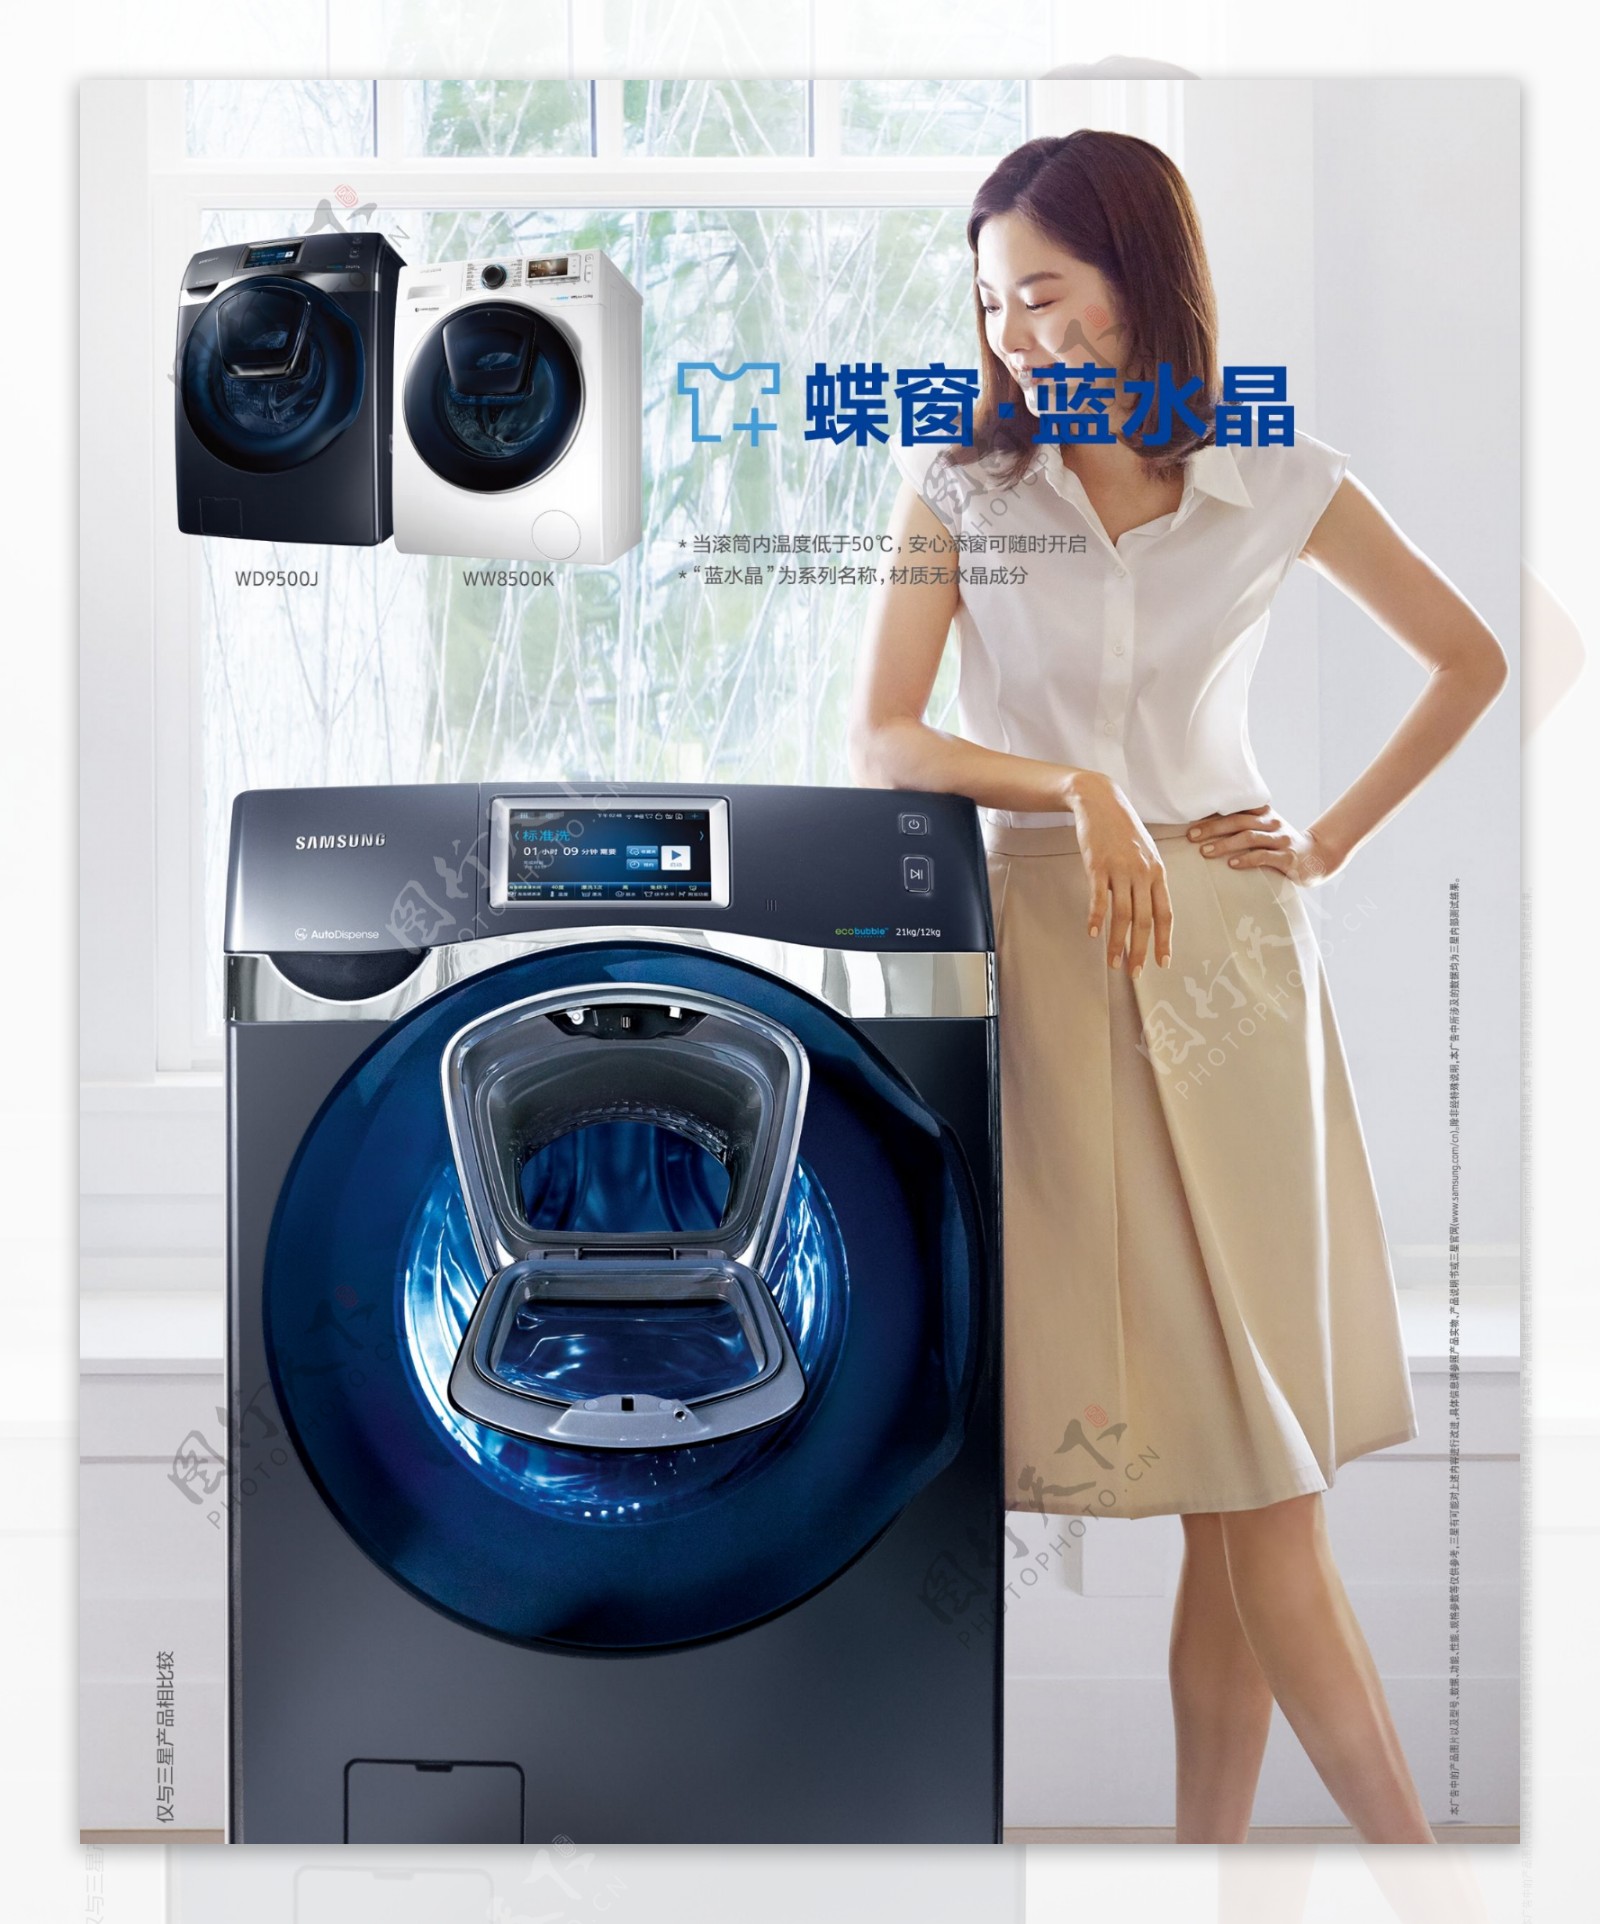 洗衣机广告画面